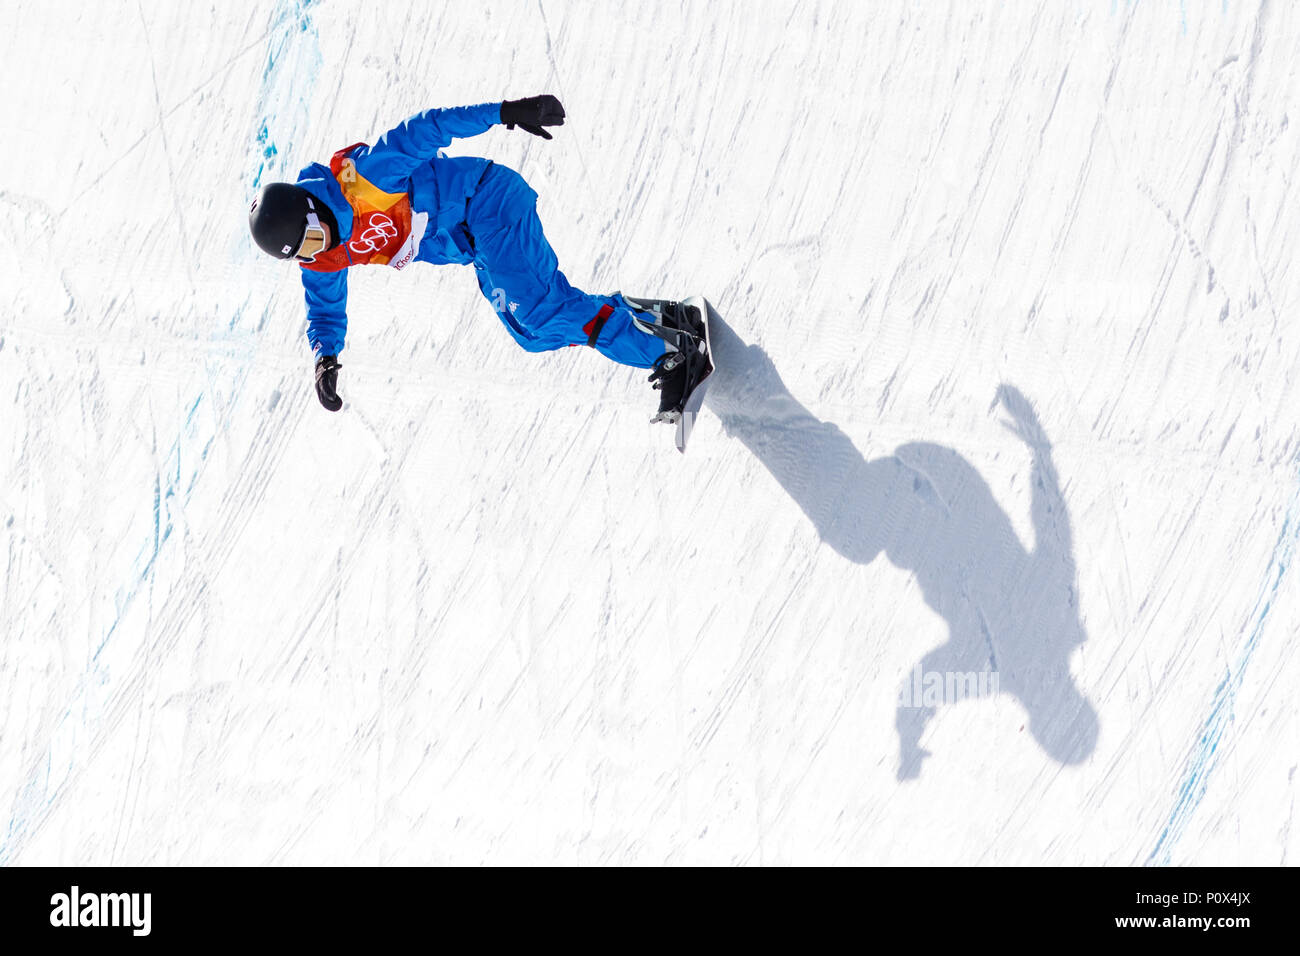 Kweon Leejun (KOR) konkurrieren in der Männer Snowboard Halfpipe Qualifikation bei den Olympischen Winterspielen PyeongChang 2018 Stockfoto